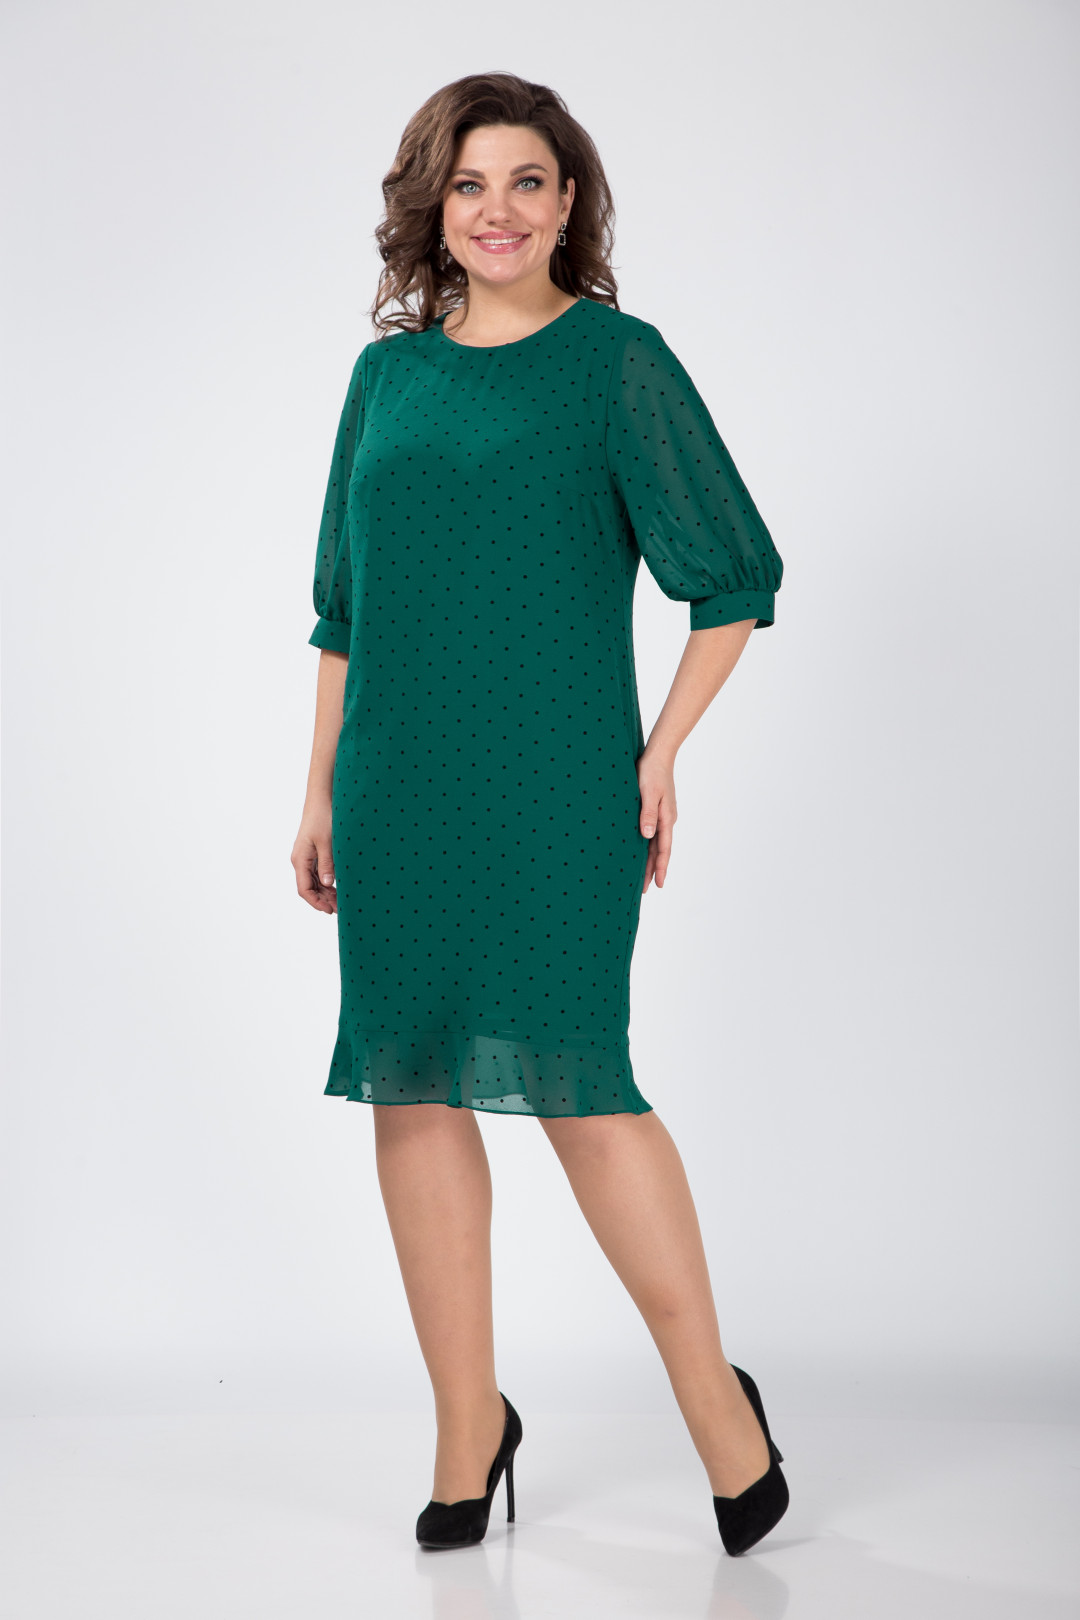 Платье Карина Делюкс В-262-3 зеленый